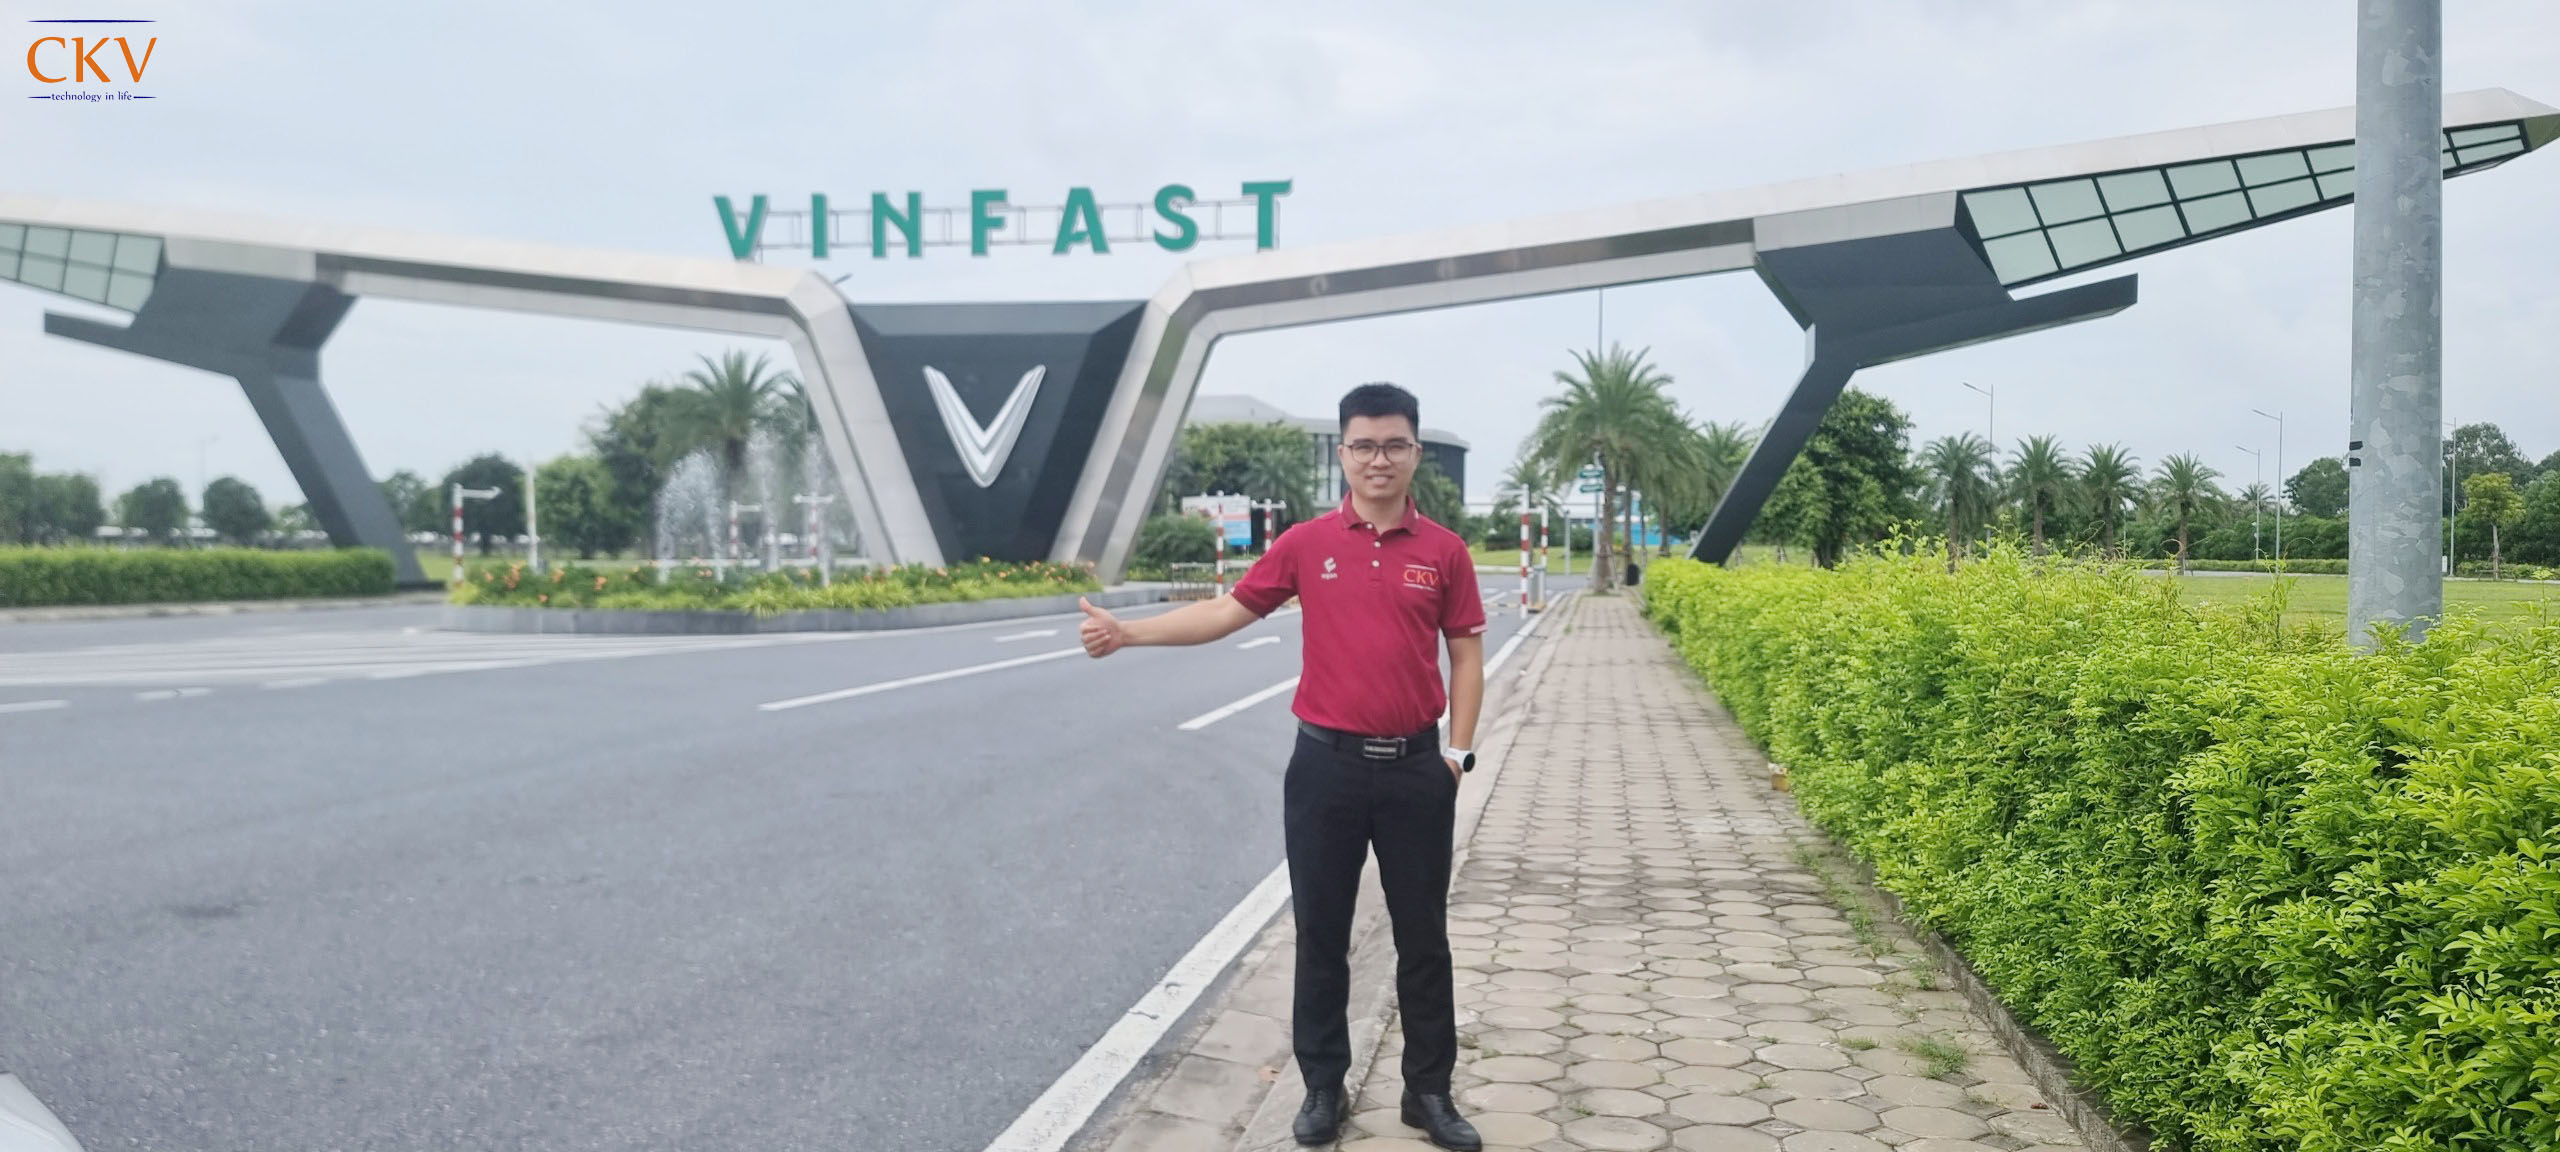 CKV Việt Nam hân hạnh trở thành nhà cung cấp vật tư và máy phụ trợ CNC với Vinfast